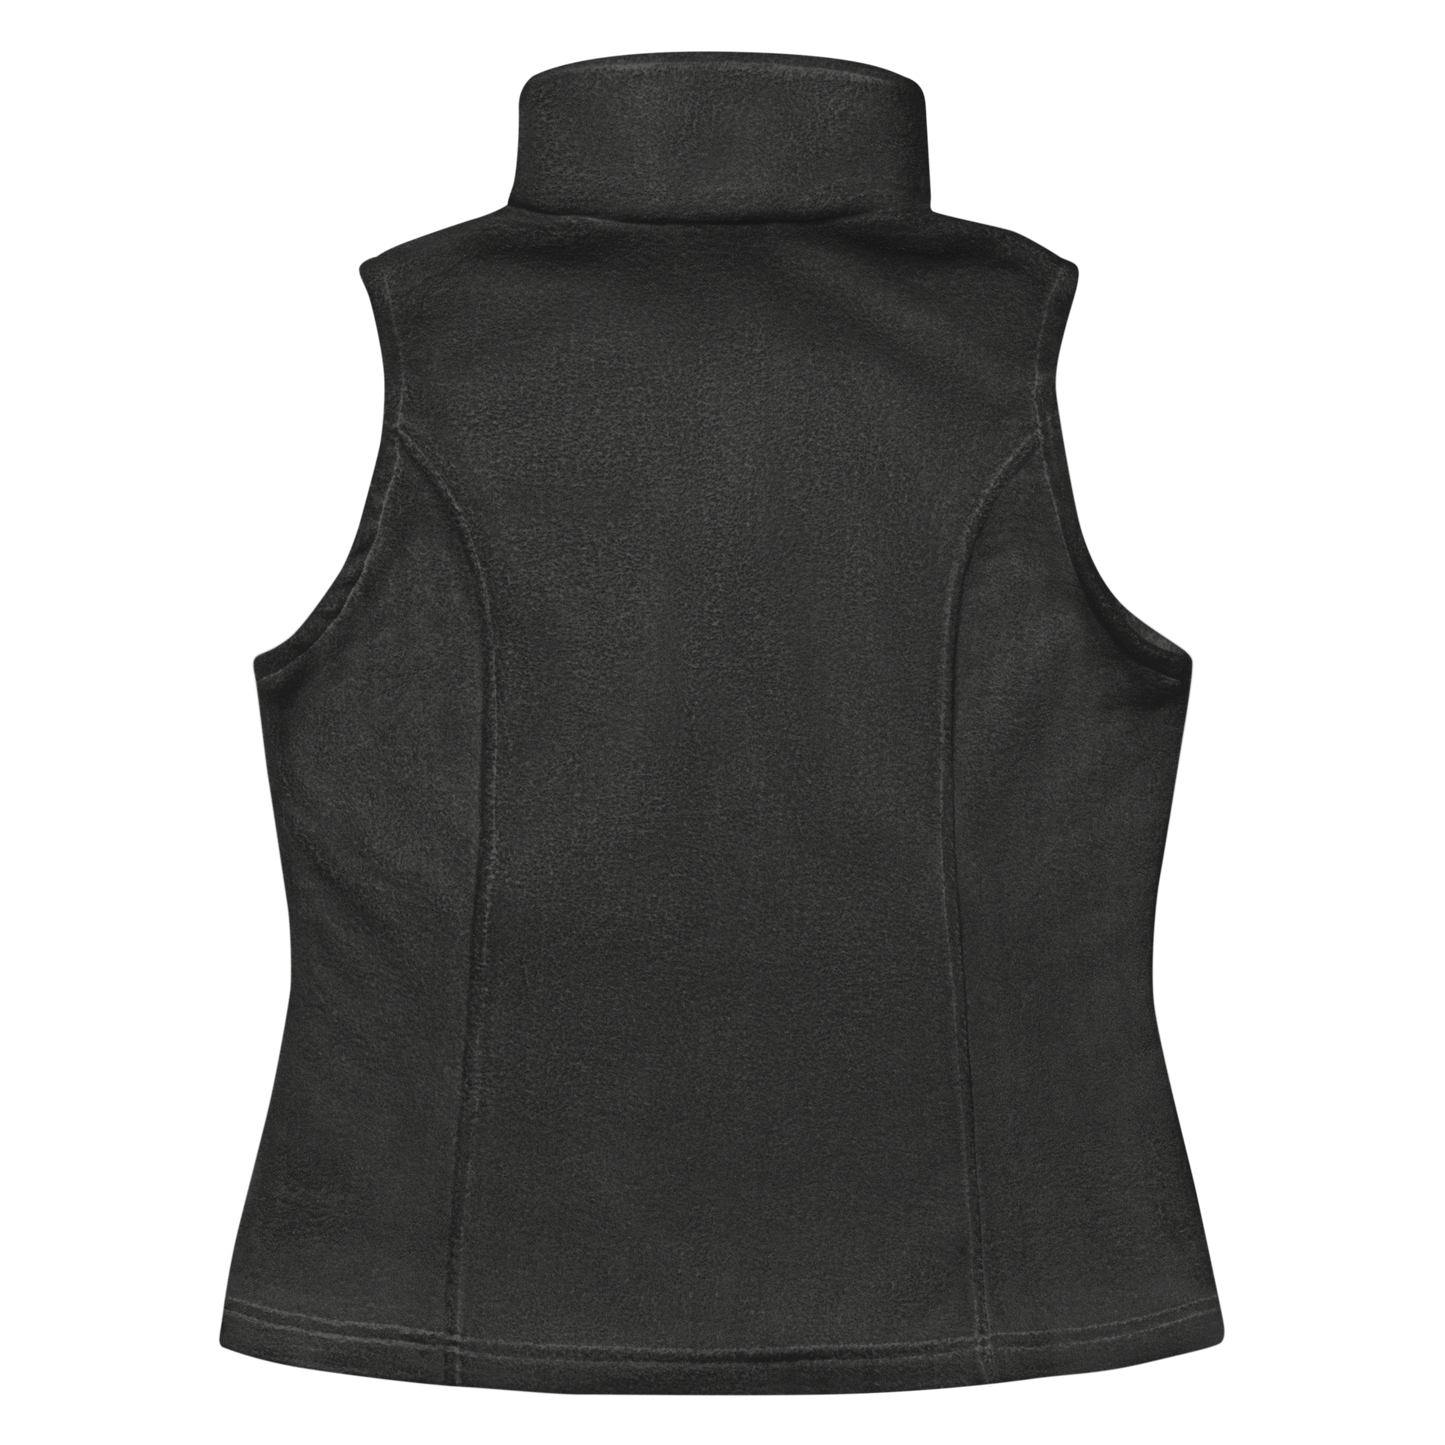 Women’s Columbia fleece vest — Grey